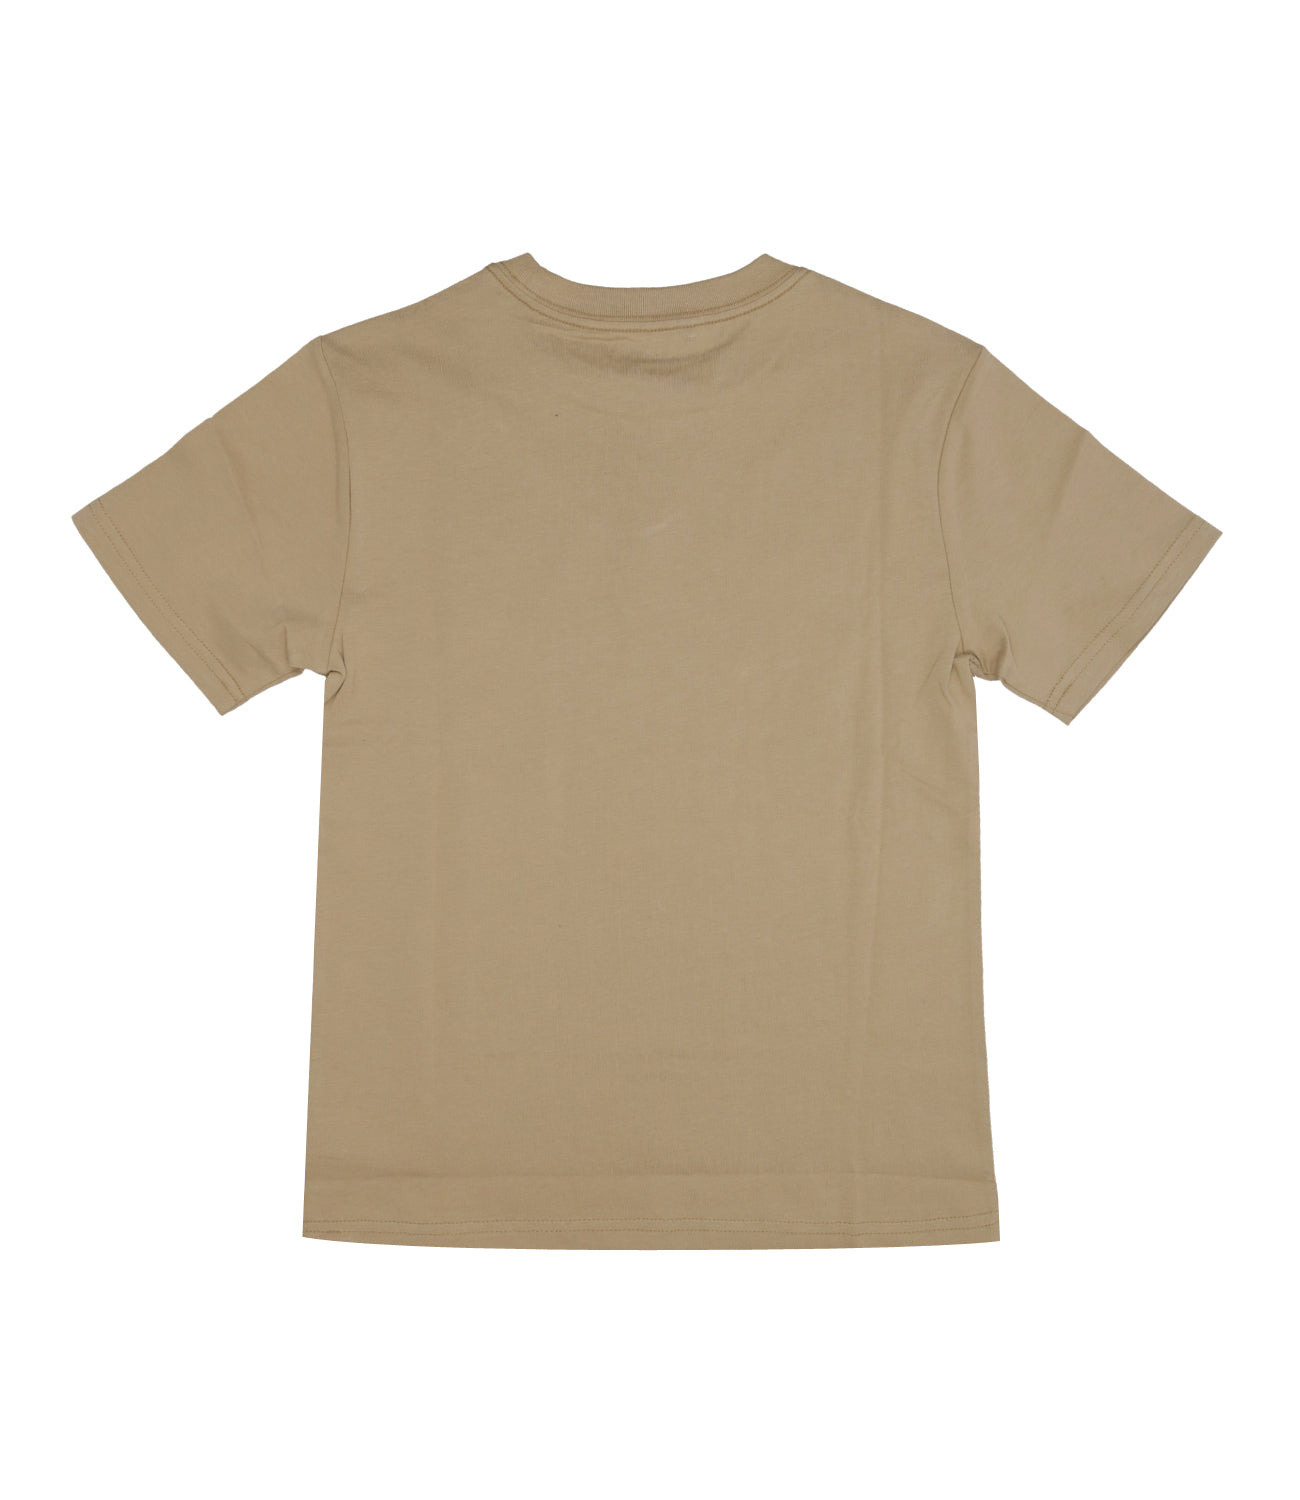 Ralph Lauren Childrenswear |T-Shirt Beige